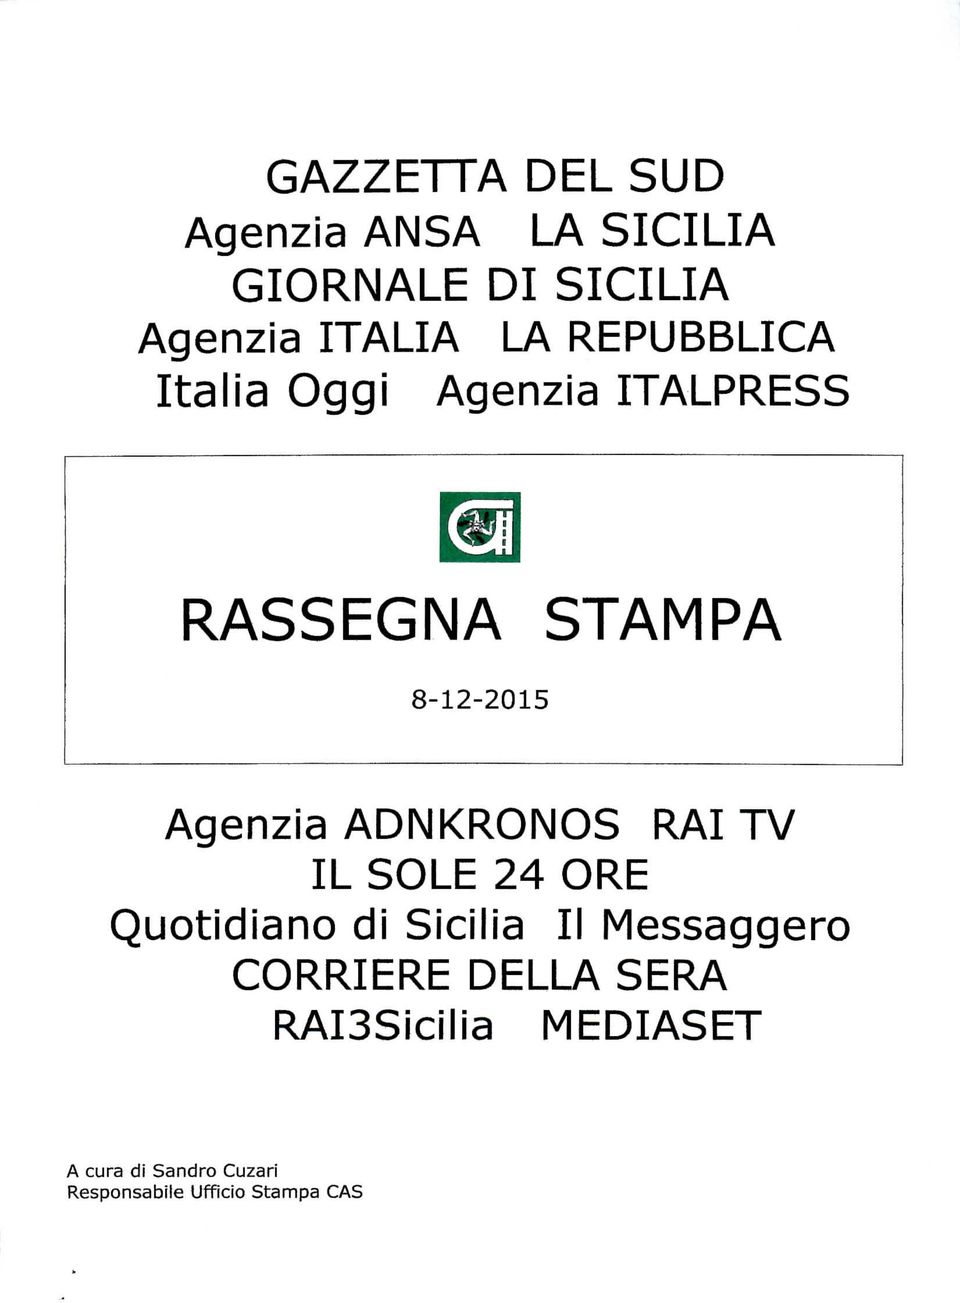 ADNKRONOS RAI TV IL SOLE 24 ORE Quotidiano di Sicilia II Messaggero CORRIERE